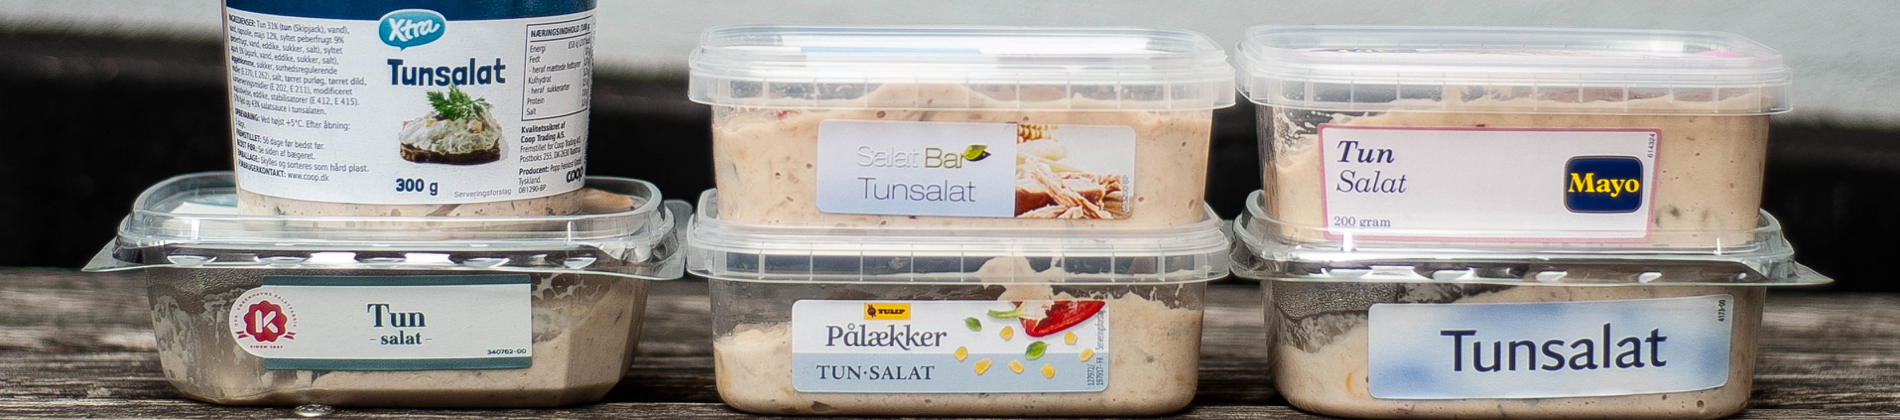 Smagstest: Discount tunsalat sejrer over kendt luksusvariant